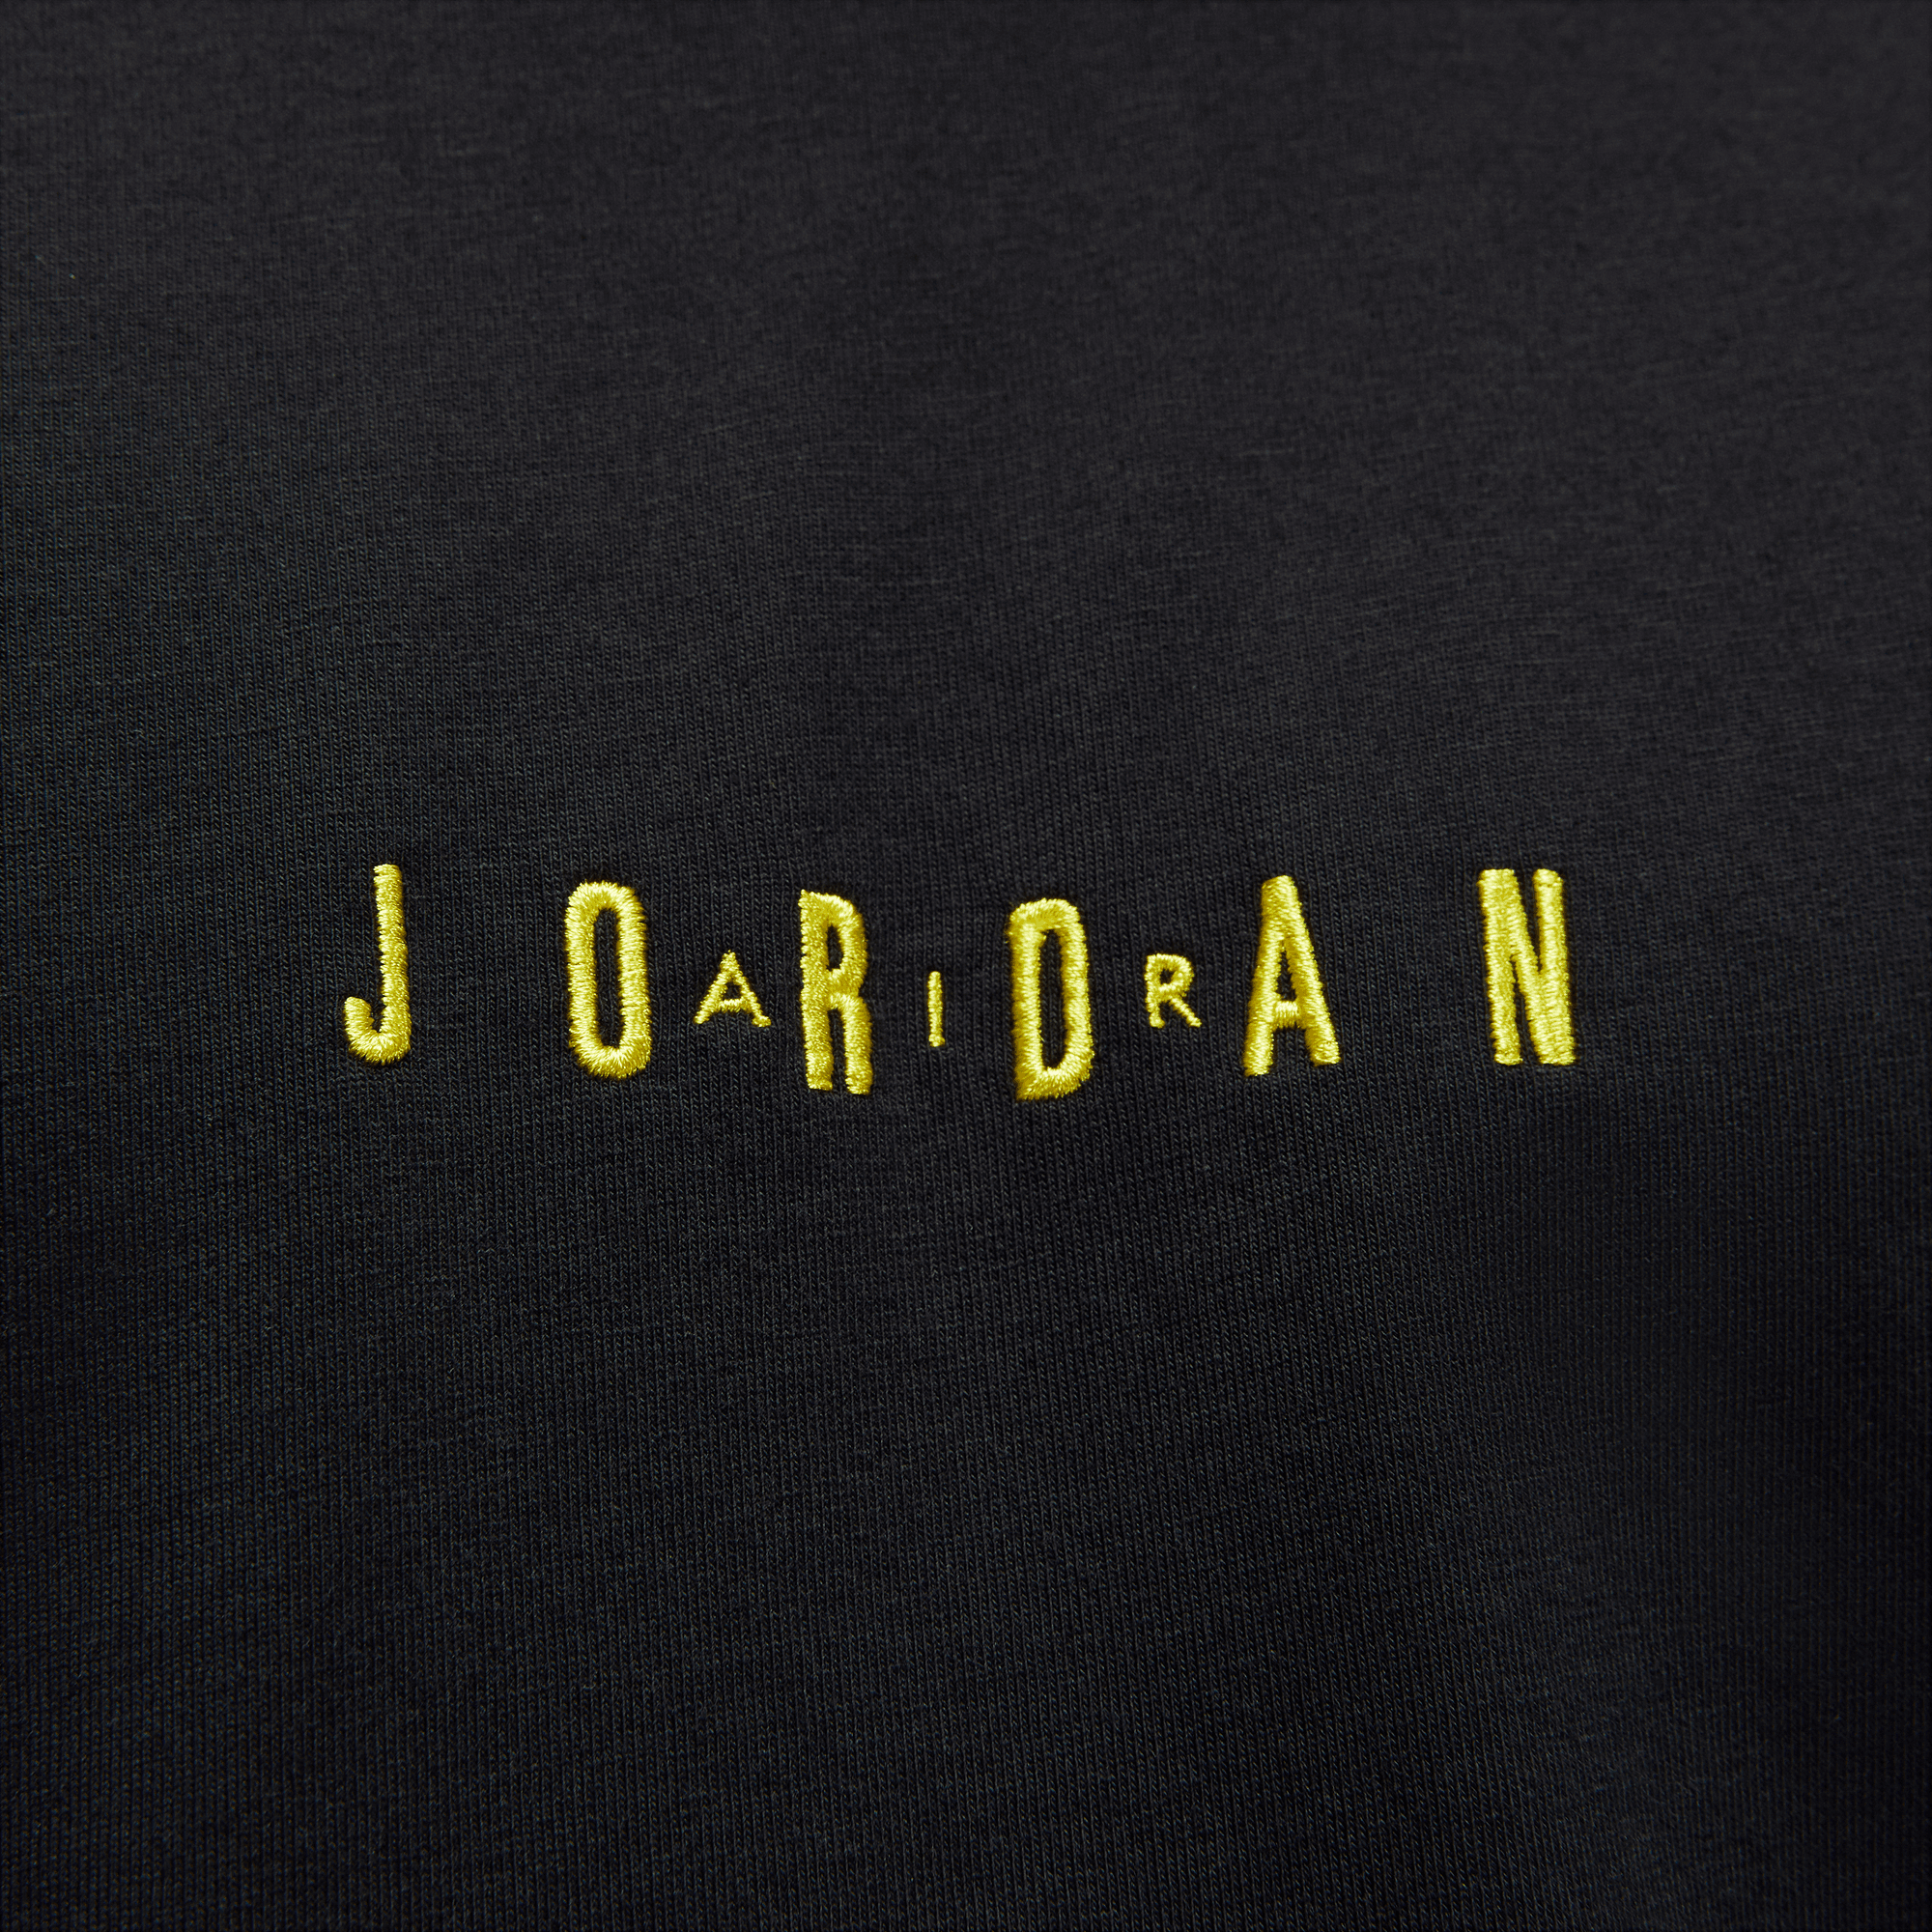 Jordan, Shirts, Jordan Air Jordan Gold Jumpman Black Tshirt Sz Xl